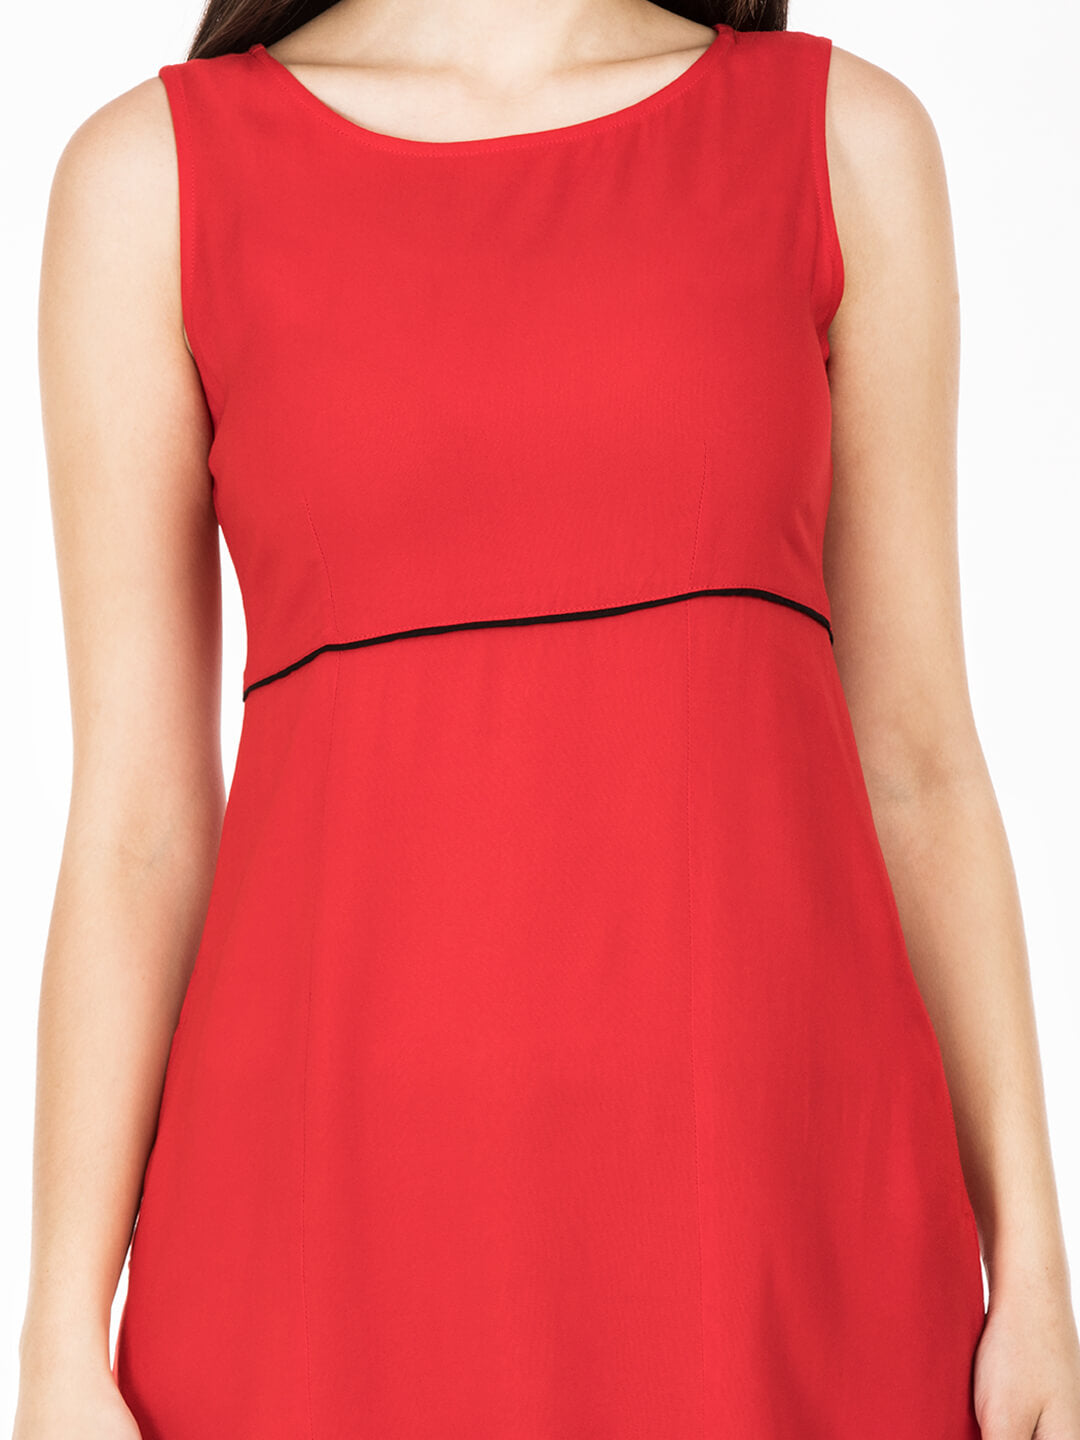 Red snug fit dress